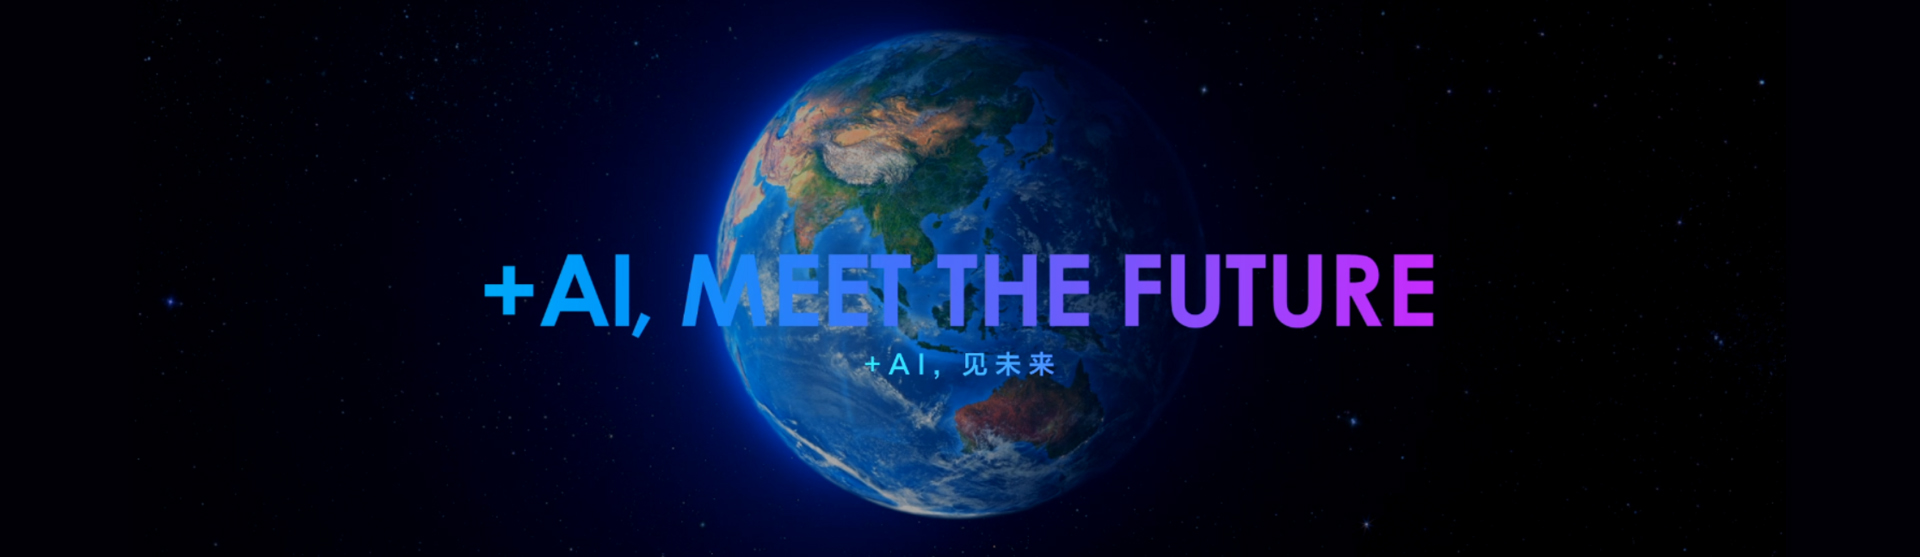 +AI, Meet the future